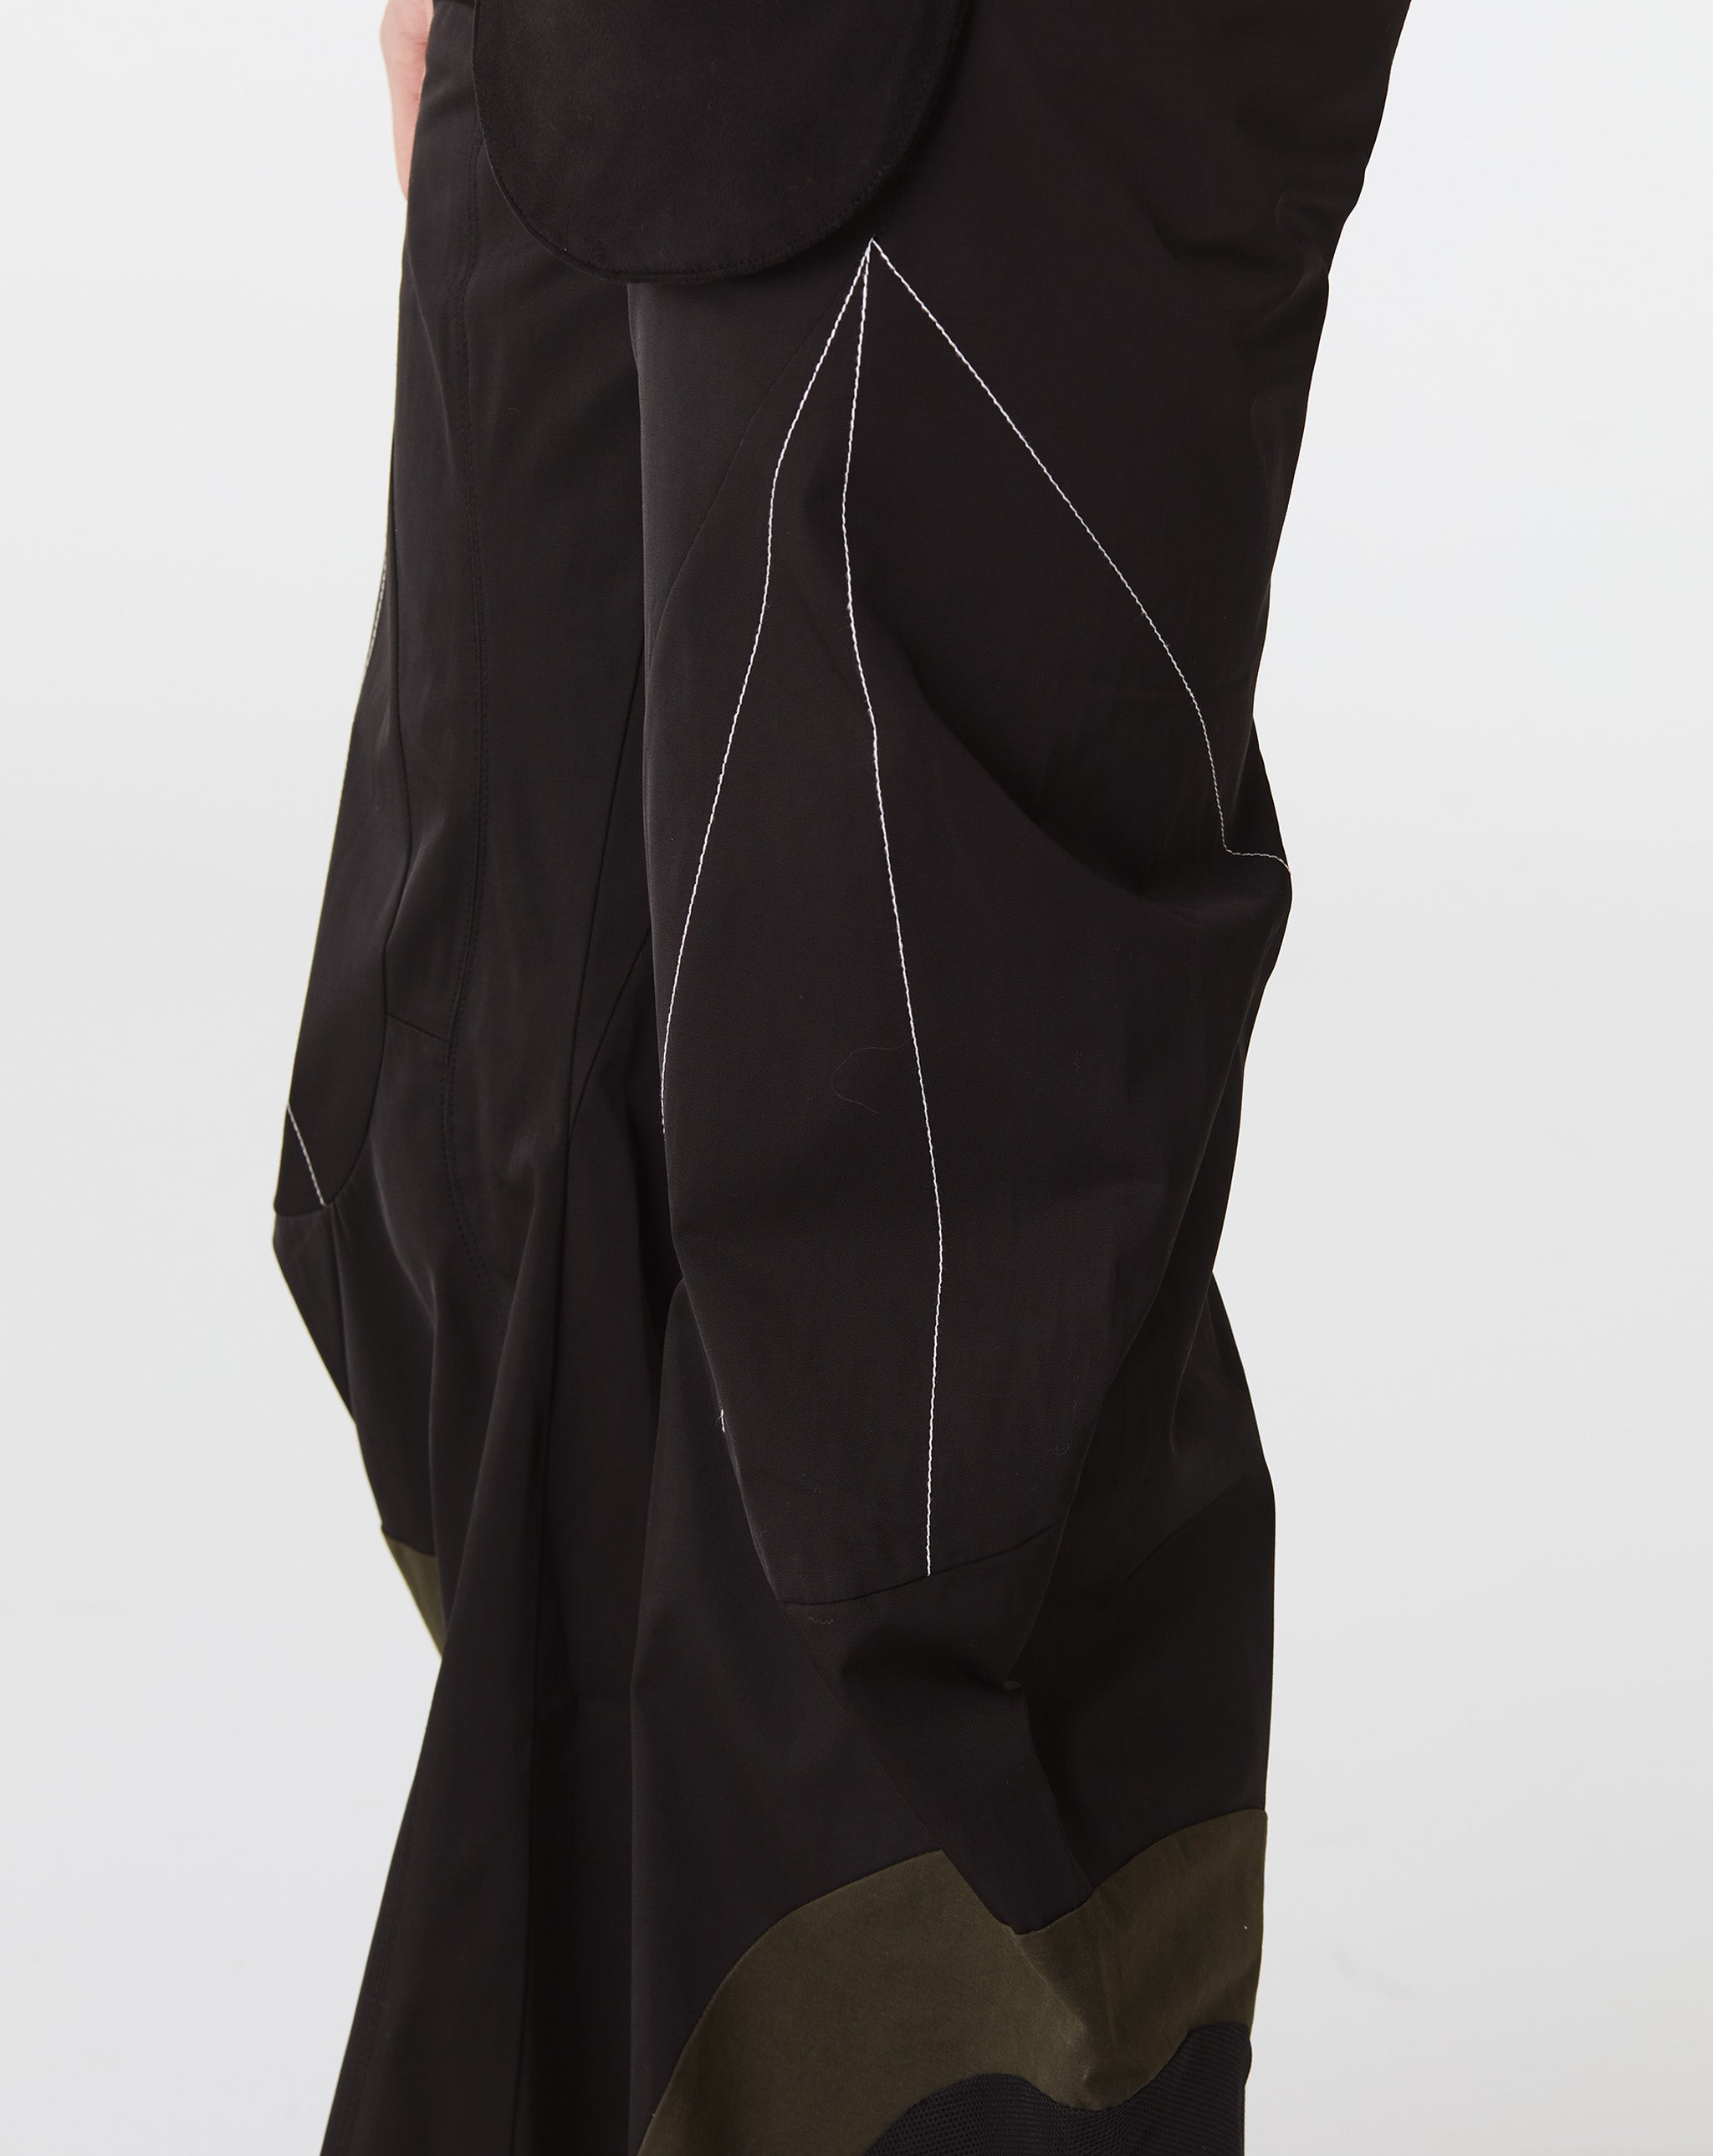 FFFPOSTALSERVICE Articulated Waist Bag Trousers V1  - Cheap Atelier-lumieres Jordan outlet